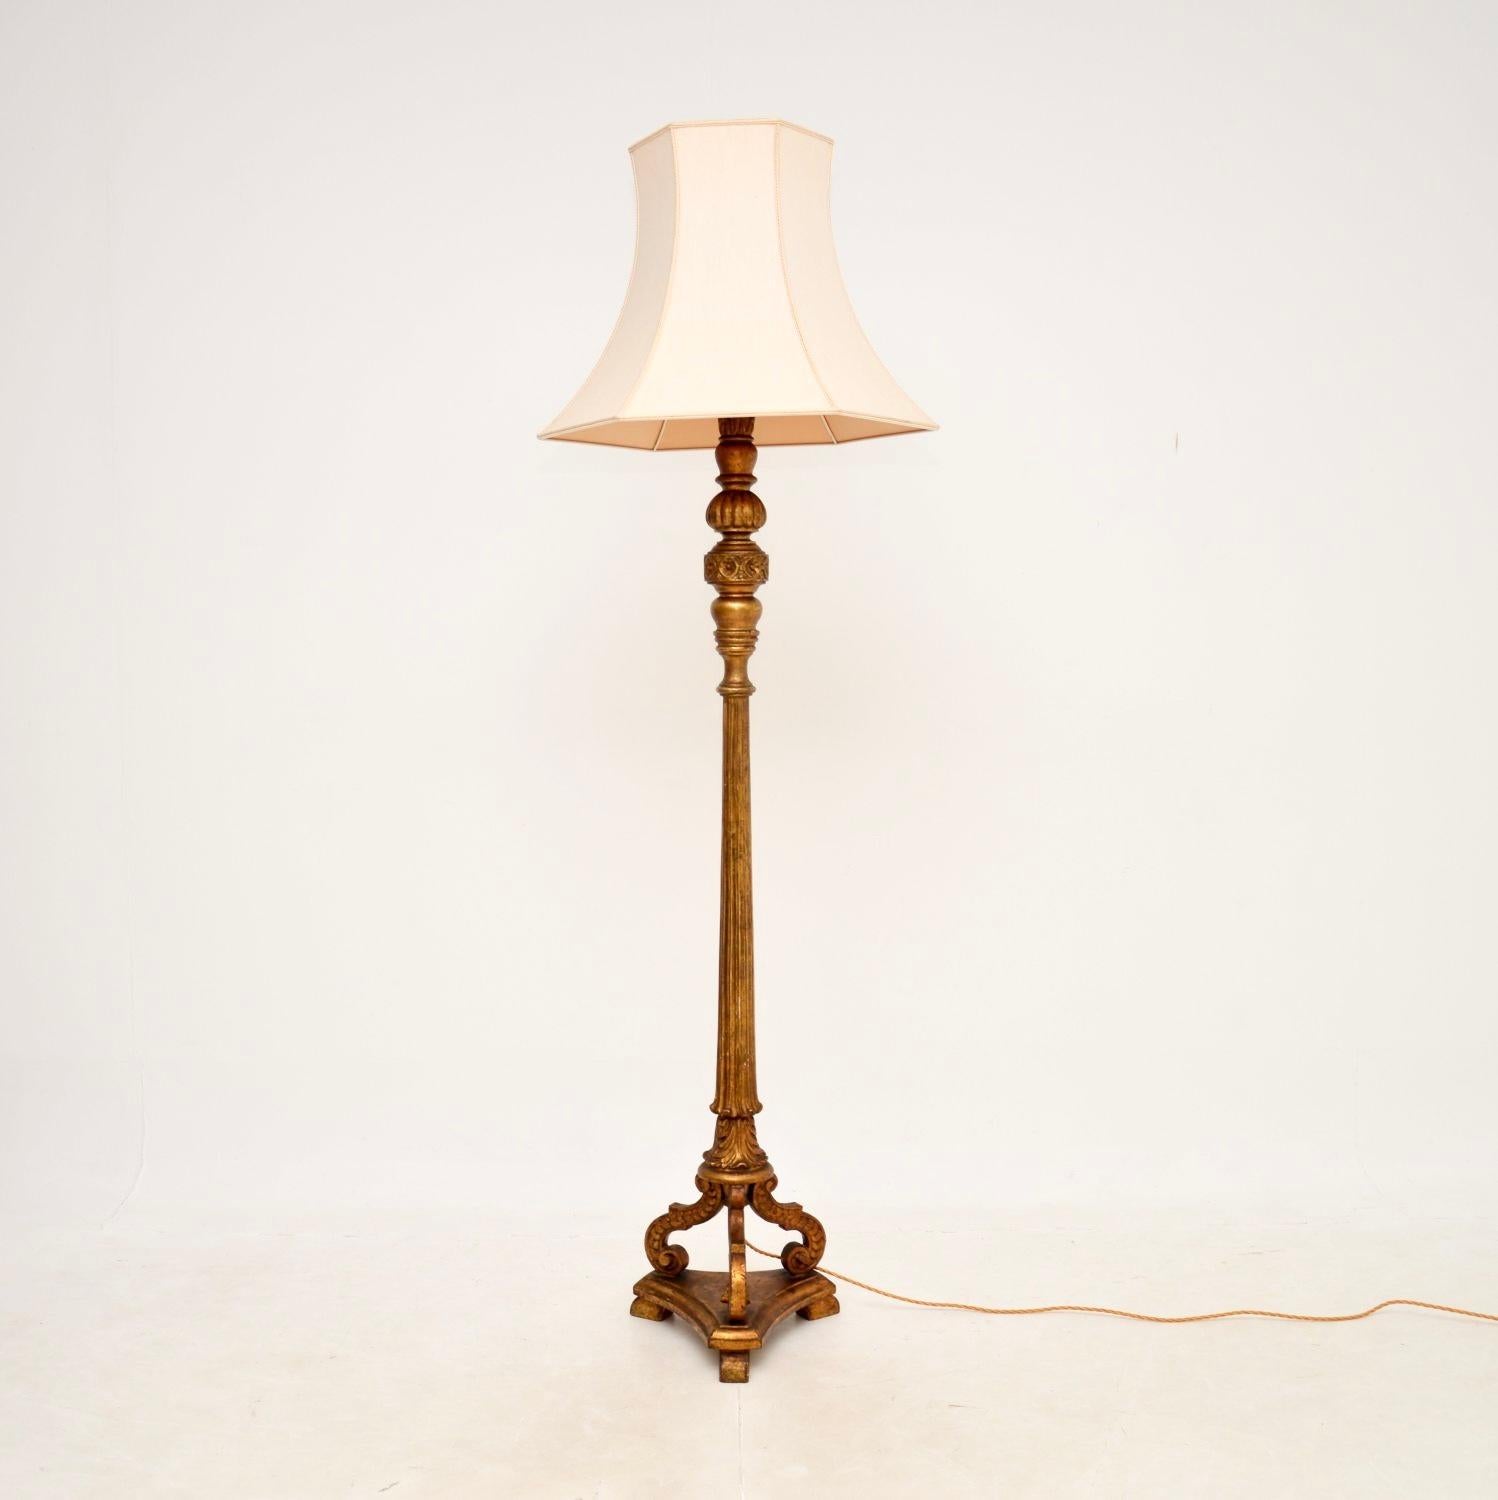 Un superbe lampadaire en bois doré de l'époque victorienne. Fabriqué en Angleterre, il date d'environ la période 1890-1900.

Il est d'une superbe qualité et présente des détails fins et complexes. Le cadre en bois massif présente une magnifique